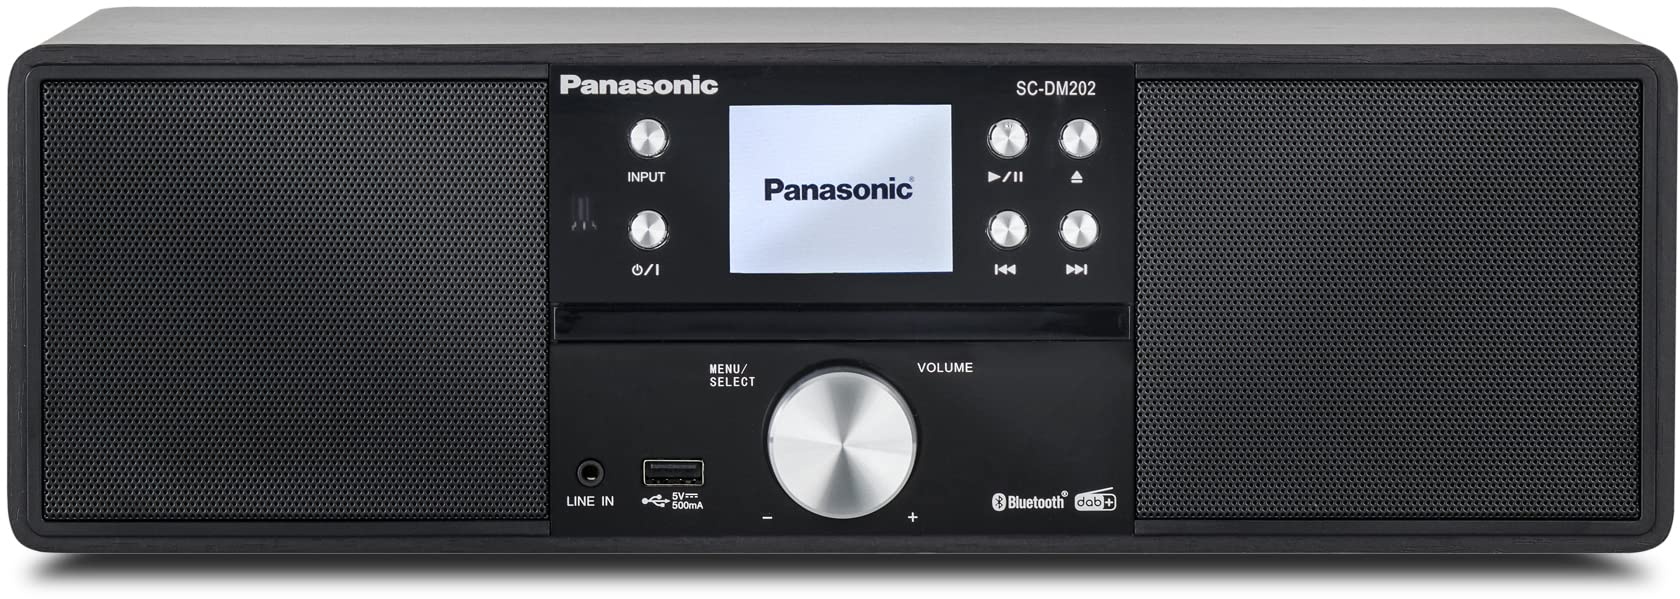 Panasonic SC-DM202EG-K Kompaktes Micro HiFi Stereosystem mit CD, DAB+/FM Radio, USB und Bluetooth, 24W Lautsprechern, Fernbedienung, 2,4 Zoll TFT LCD-Display, EQ-Einstellungen, Schwarz.